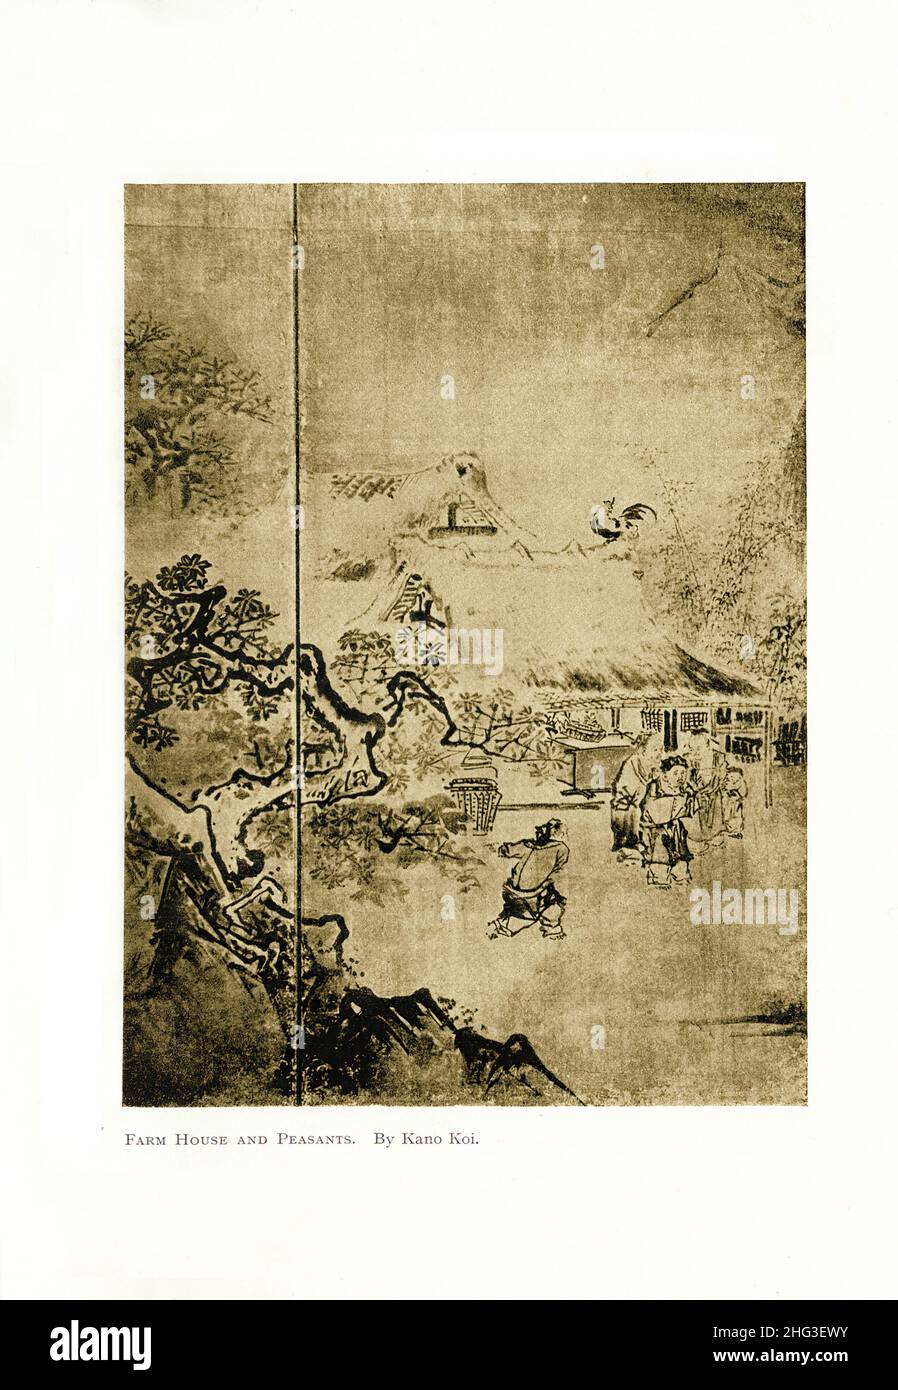 Japanische Malerei: Bauernhaus und Bauern. Von Kano Koi. Azuchi-Momoyama-Zeit. Reproduktion der Buchdarstellung von 1912 Stockfoto